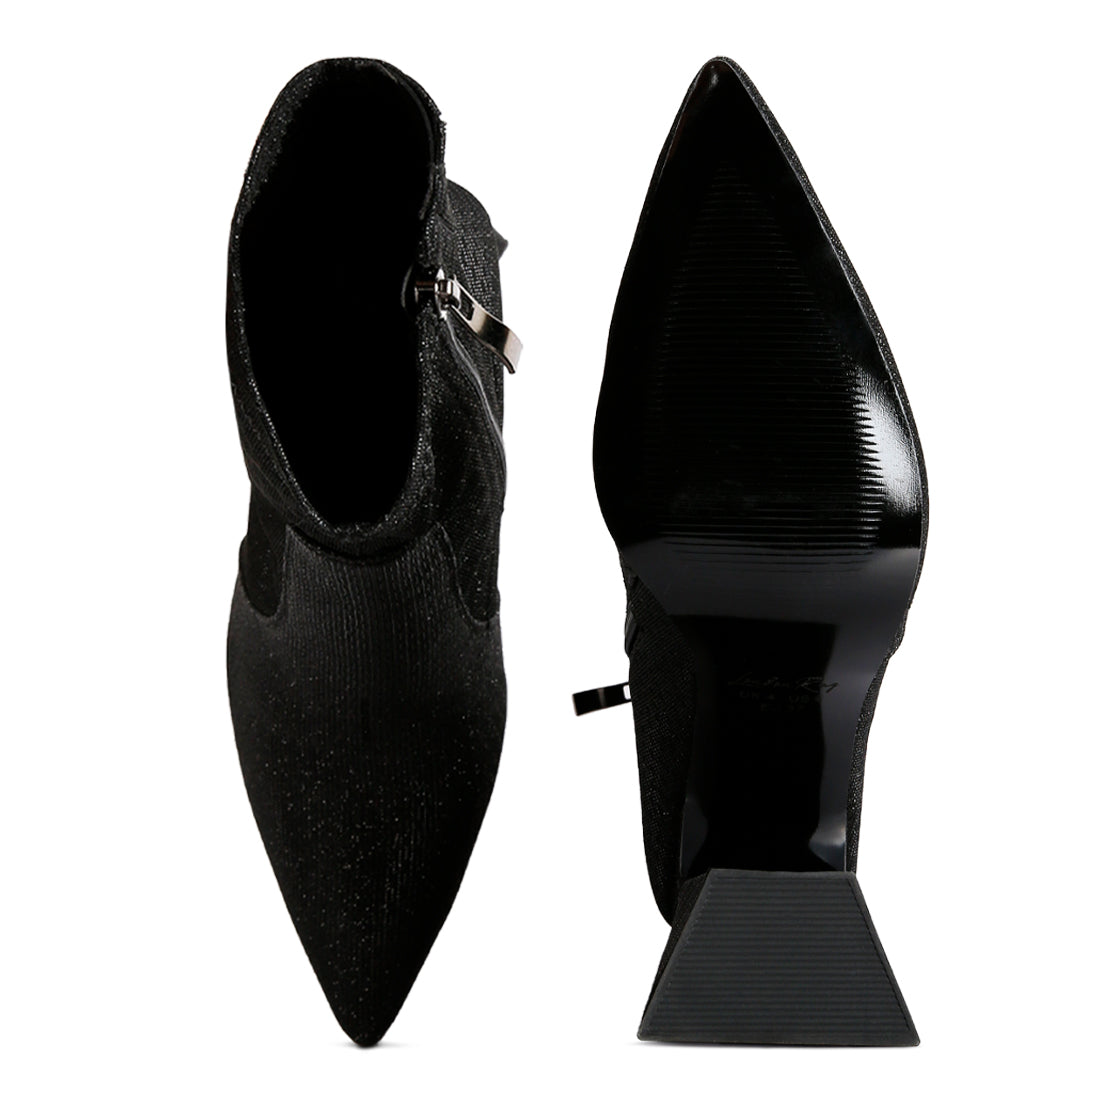 hustlers shimmer block heeled ankle boots#color_black